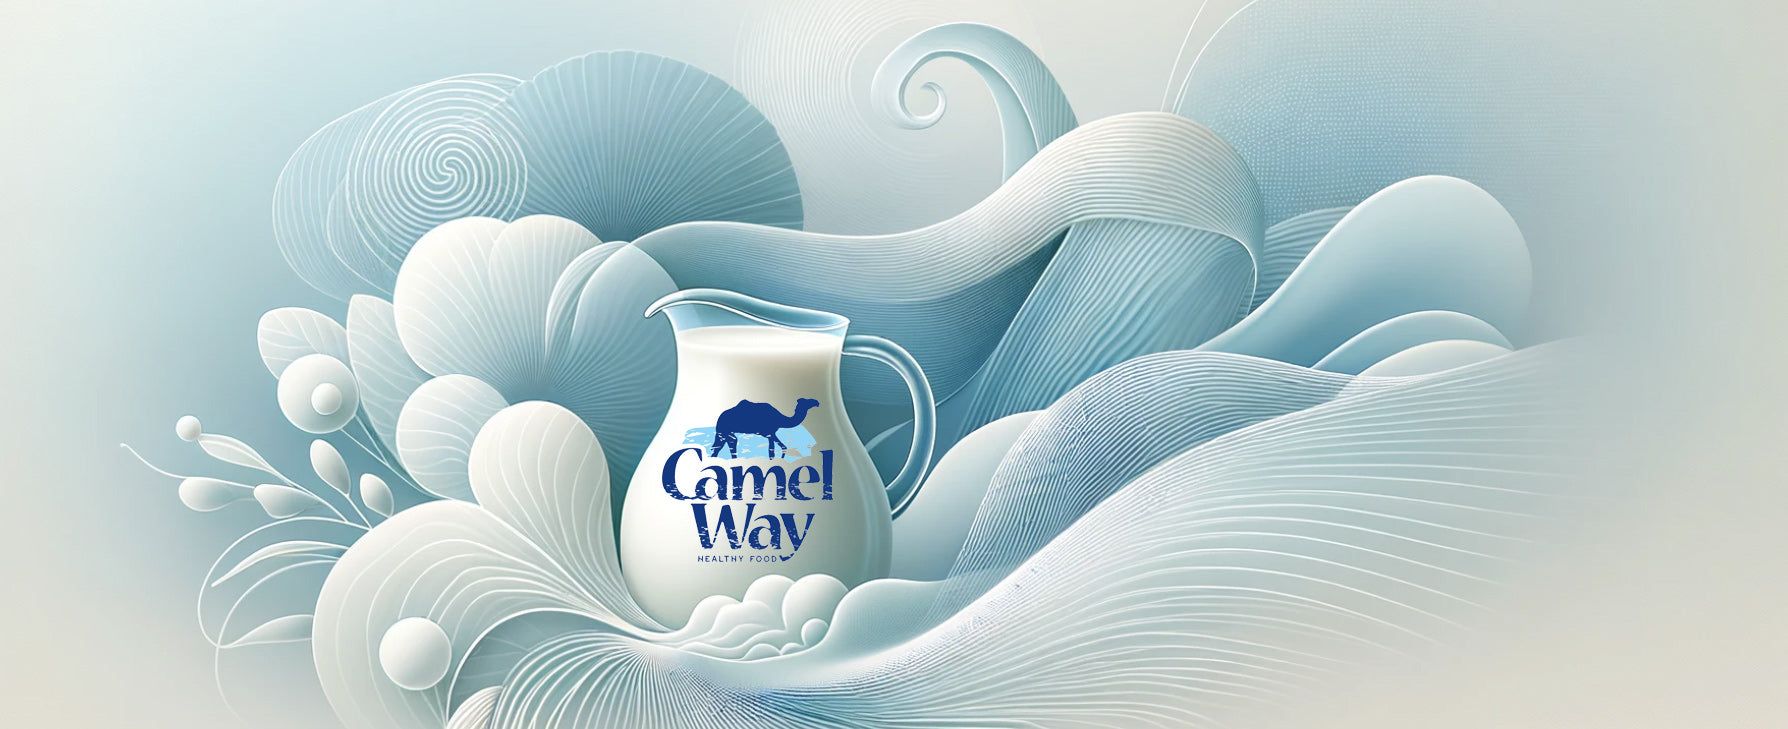 Kamelmilch: Eine erstklassige Wahl für Mutter und Kind – CamelWay Europe -  Camel Milk